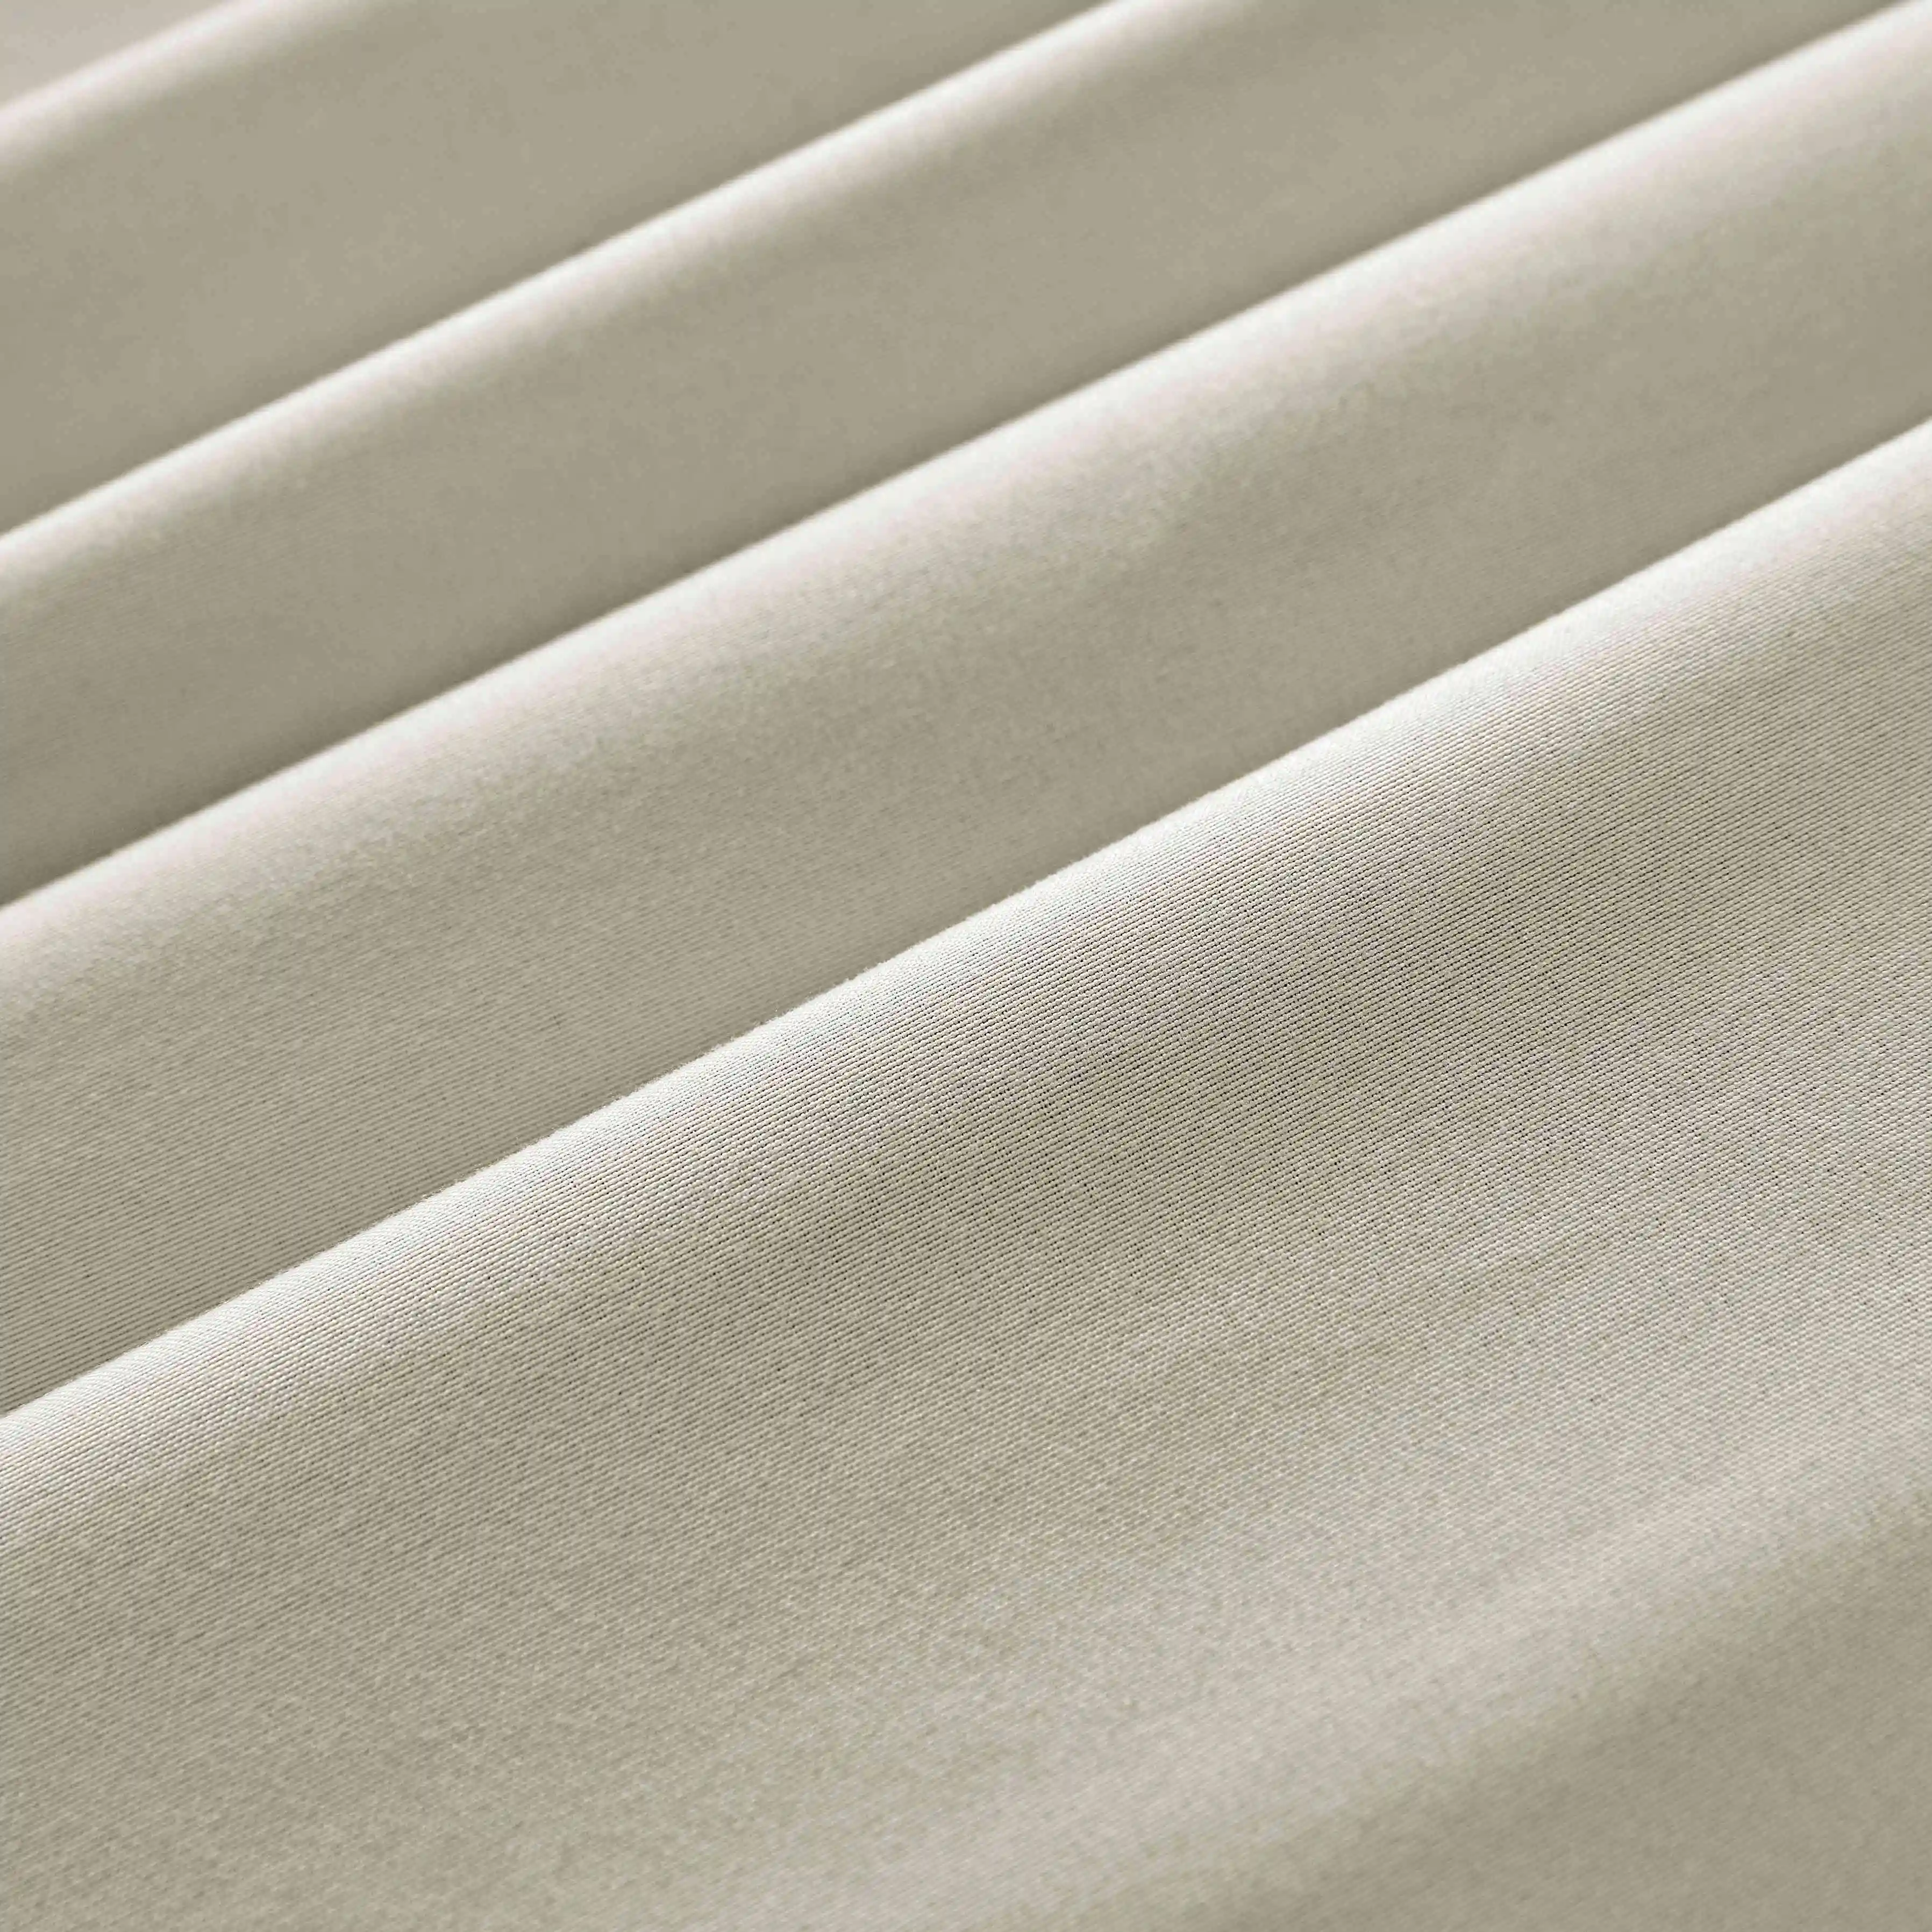 Décoration intérieure 55/56 "pouces 140cm largeur polyester imperméable rideau tissu stock lot extérieur